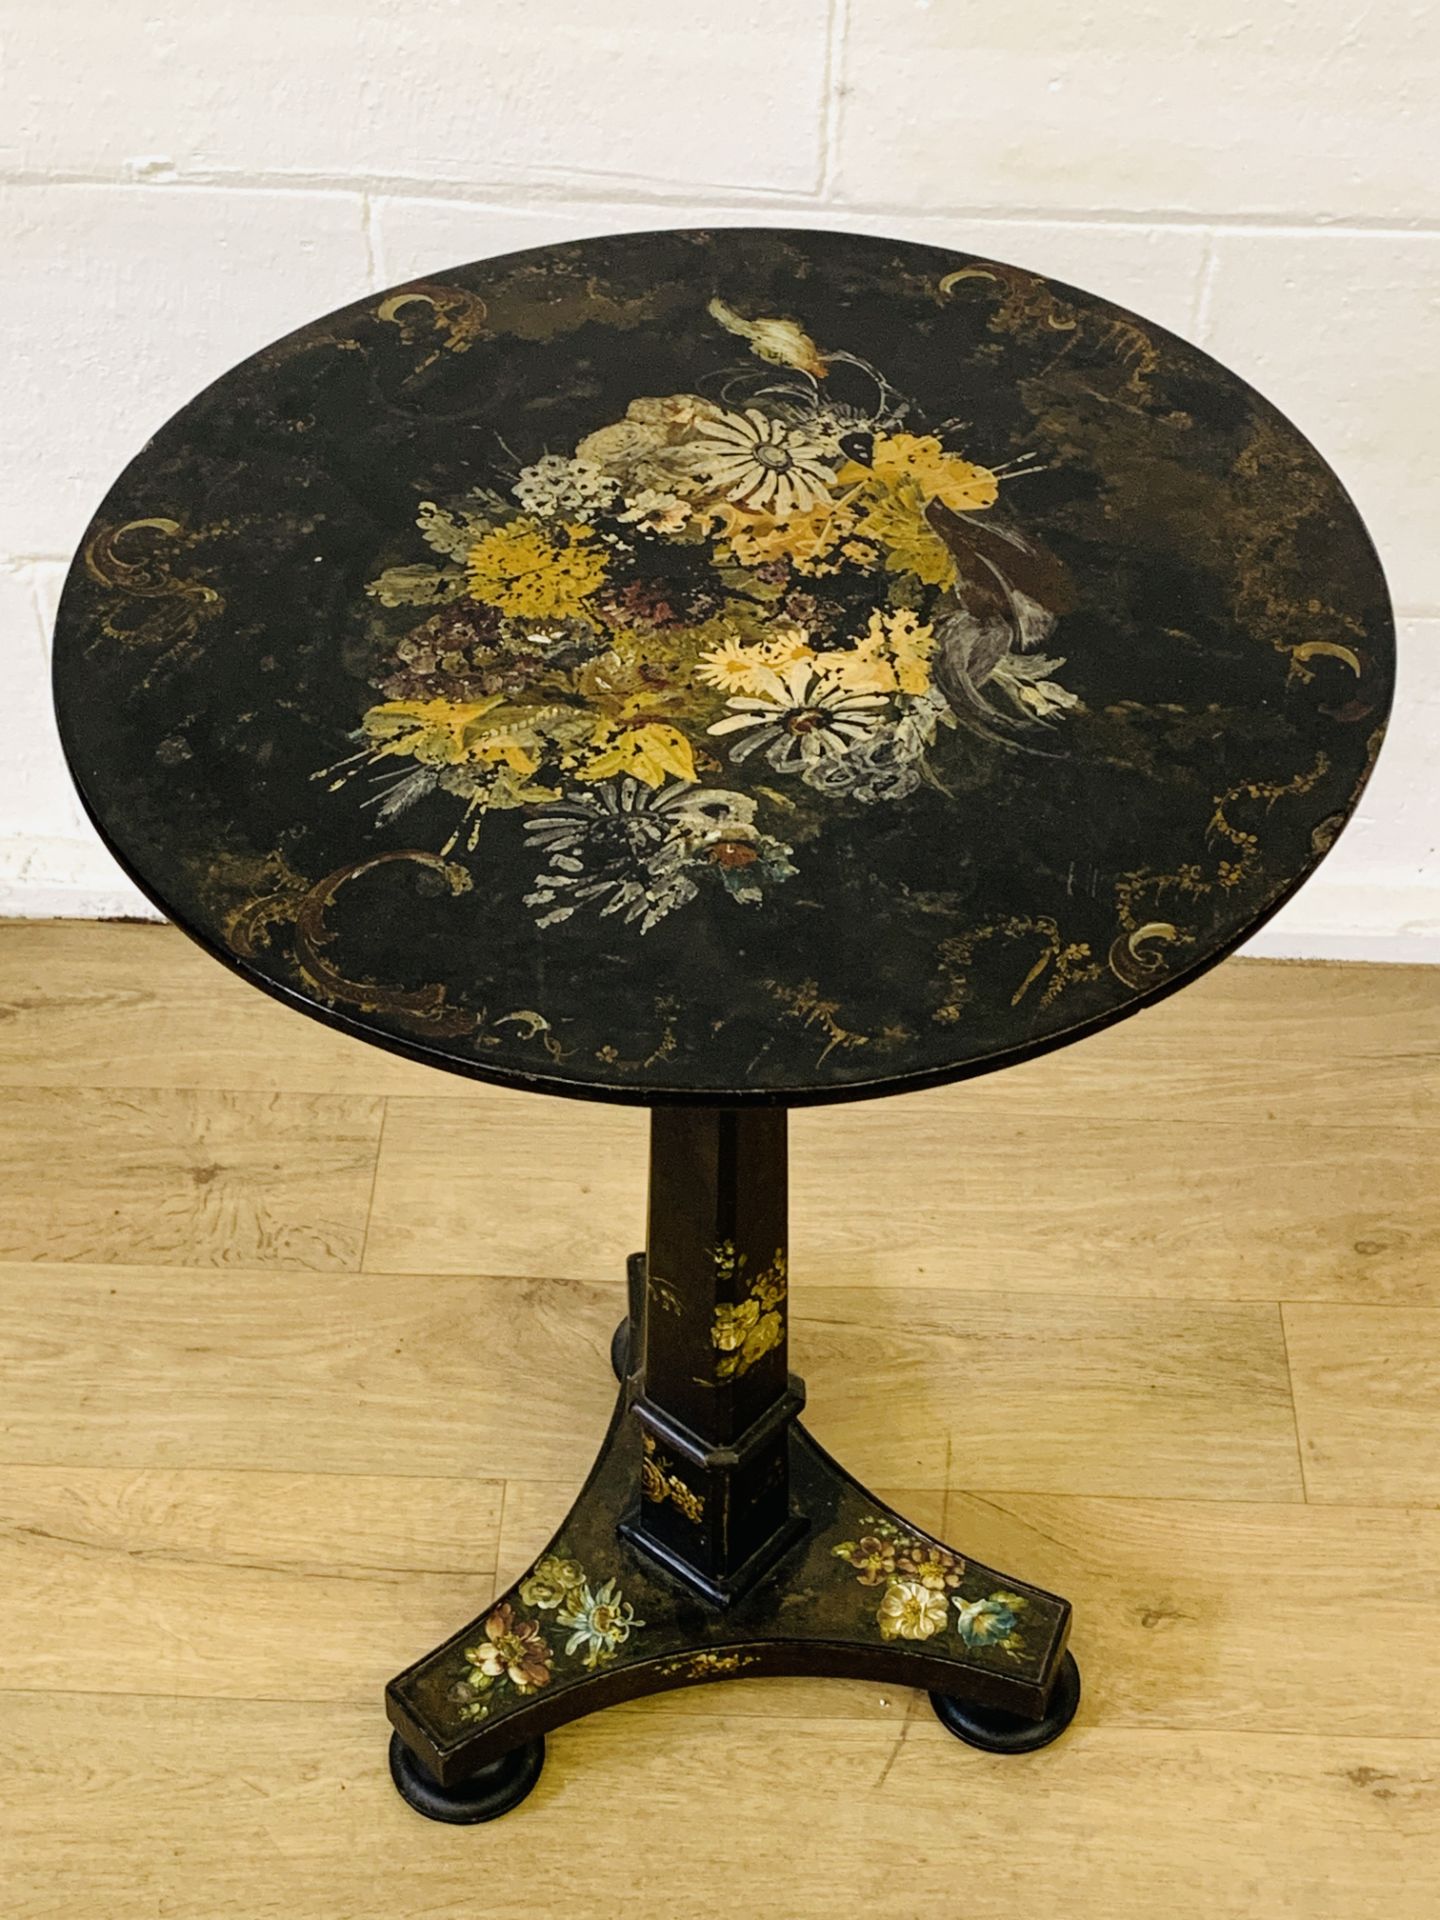 Black japanned tilt top table - Image 2 of 7